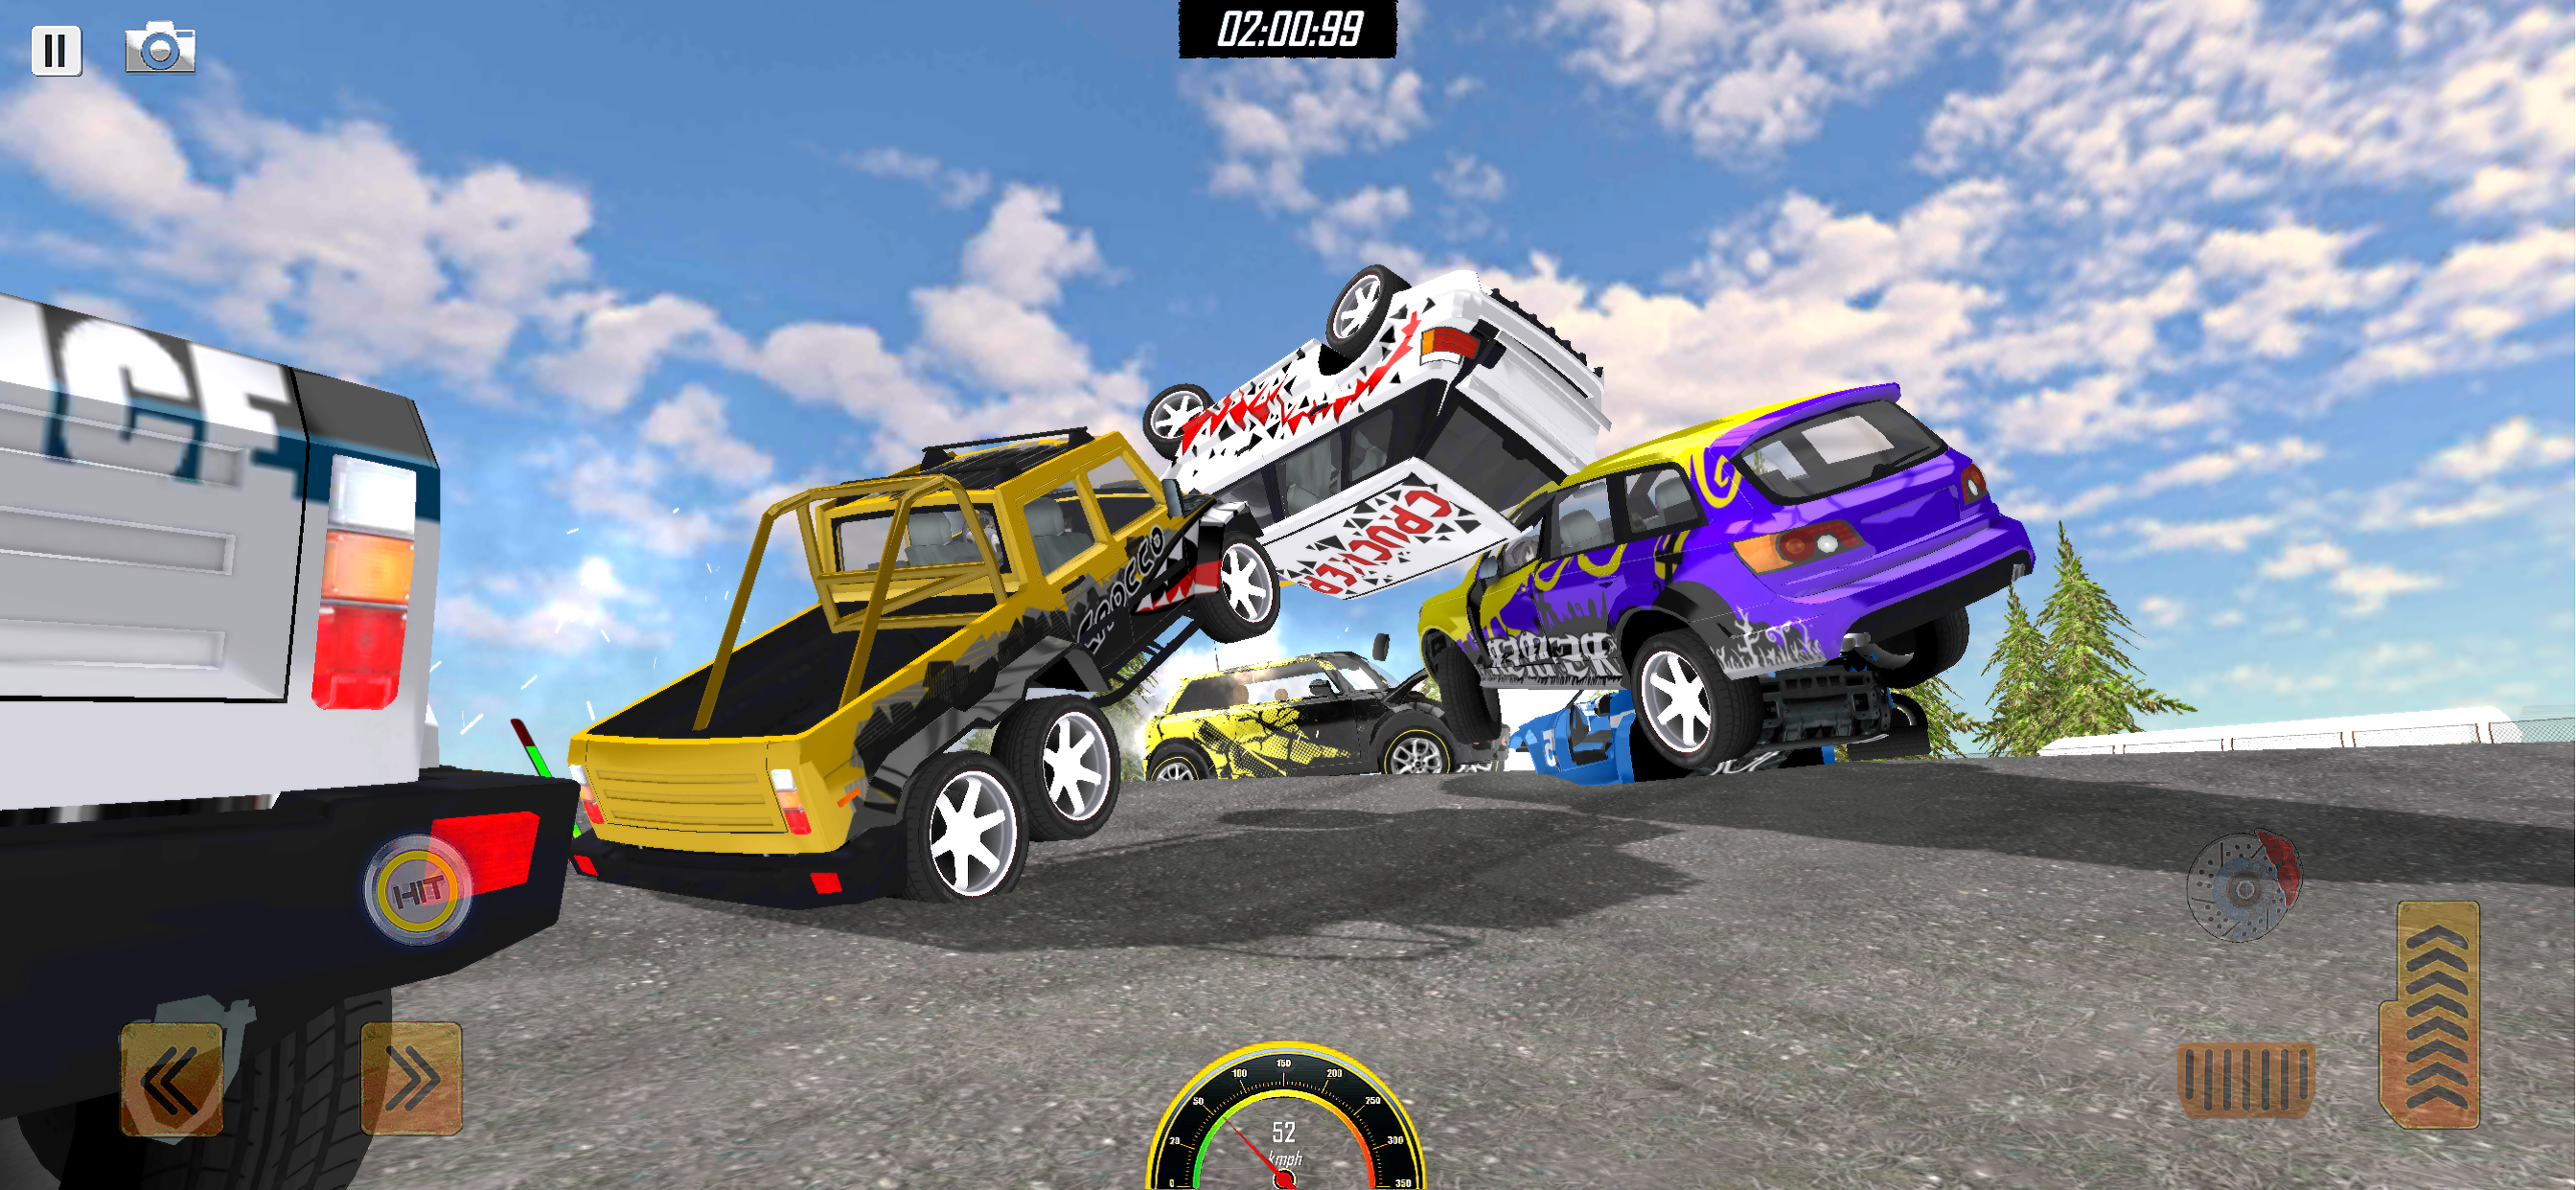 Demolition Derby 4 screenshot game